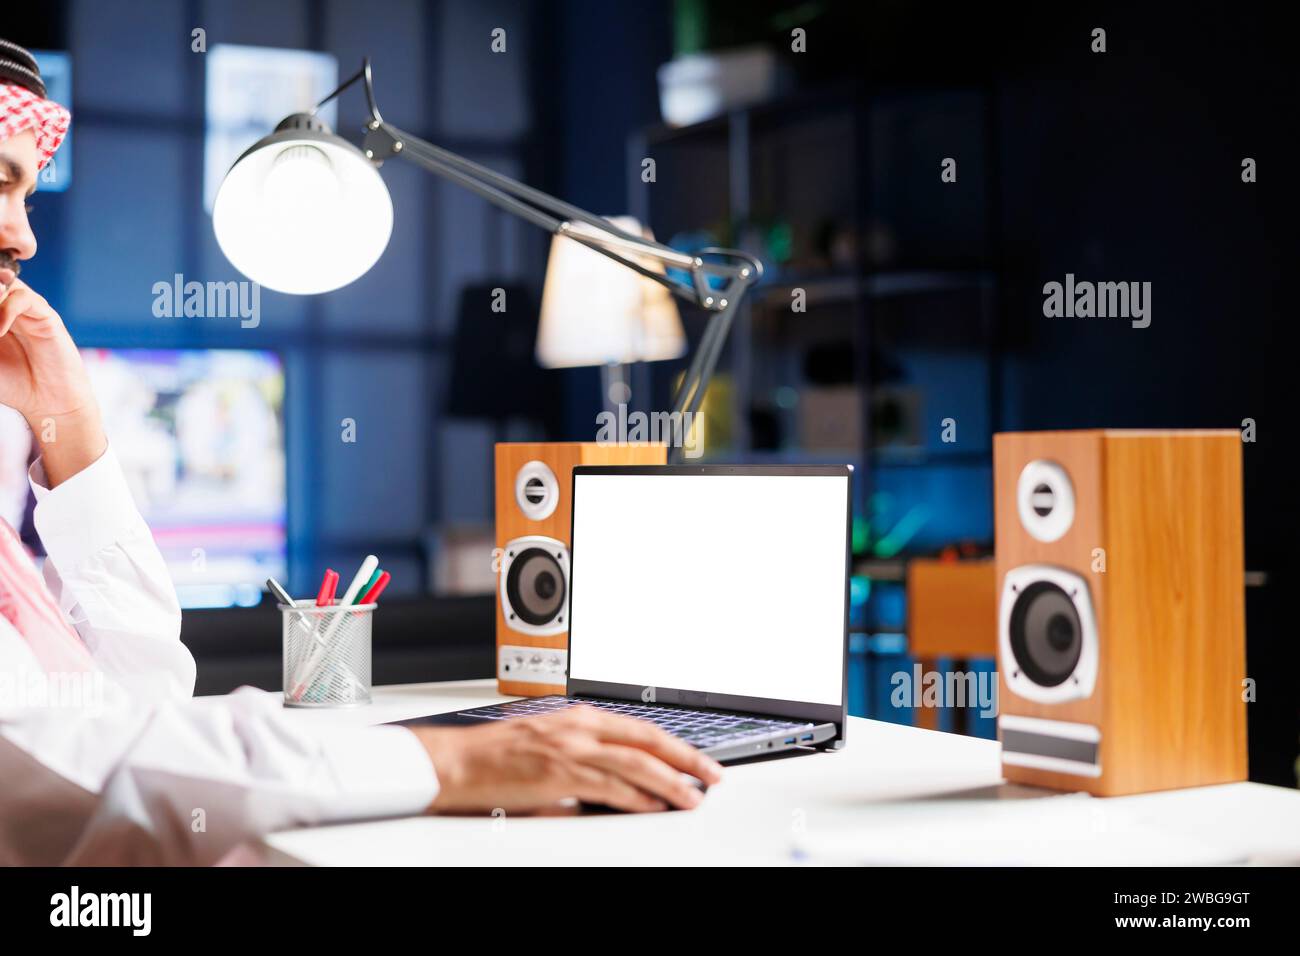 Ein Mann aus dem Nahen Osten benutzt seinen digitalen Laptop, der eine leere Chromakey-Vorlage zeigt. Ein Araber arbeitet an seinem Minicomputer, der einen isolierten weißen Bildschirm hat. Stockfoto